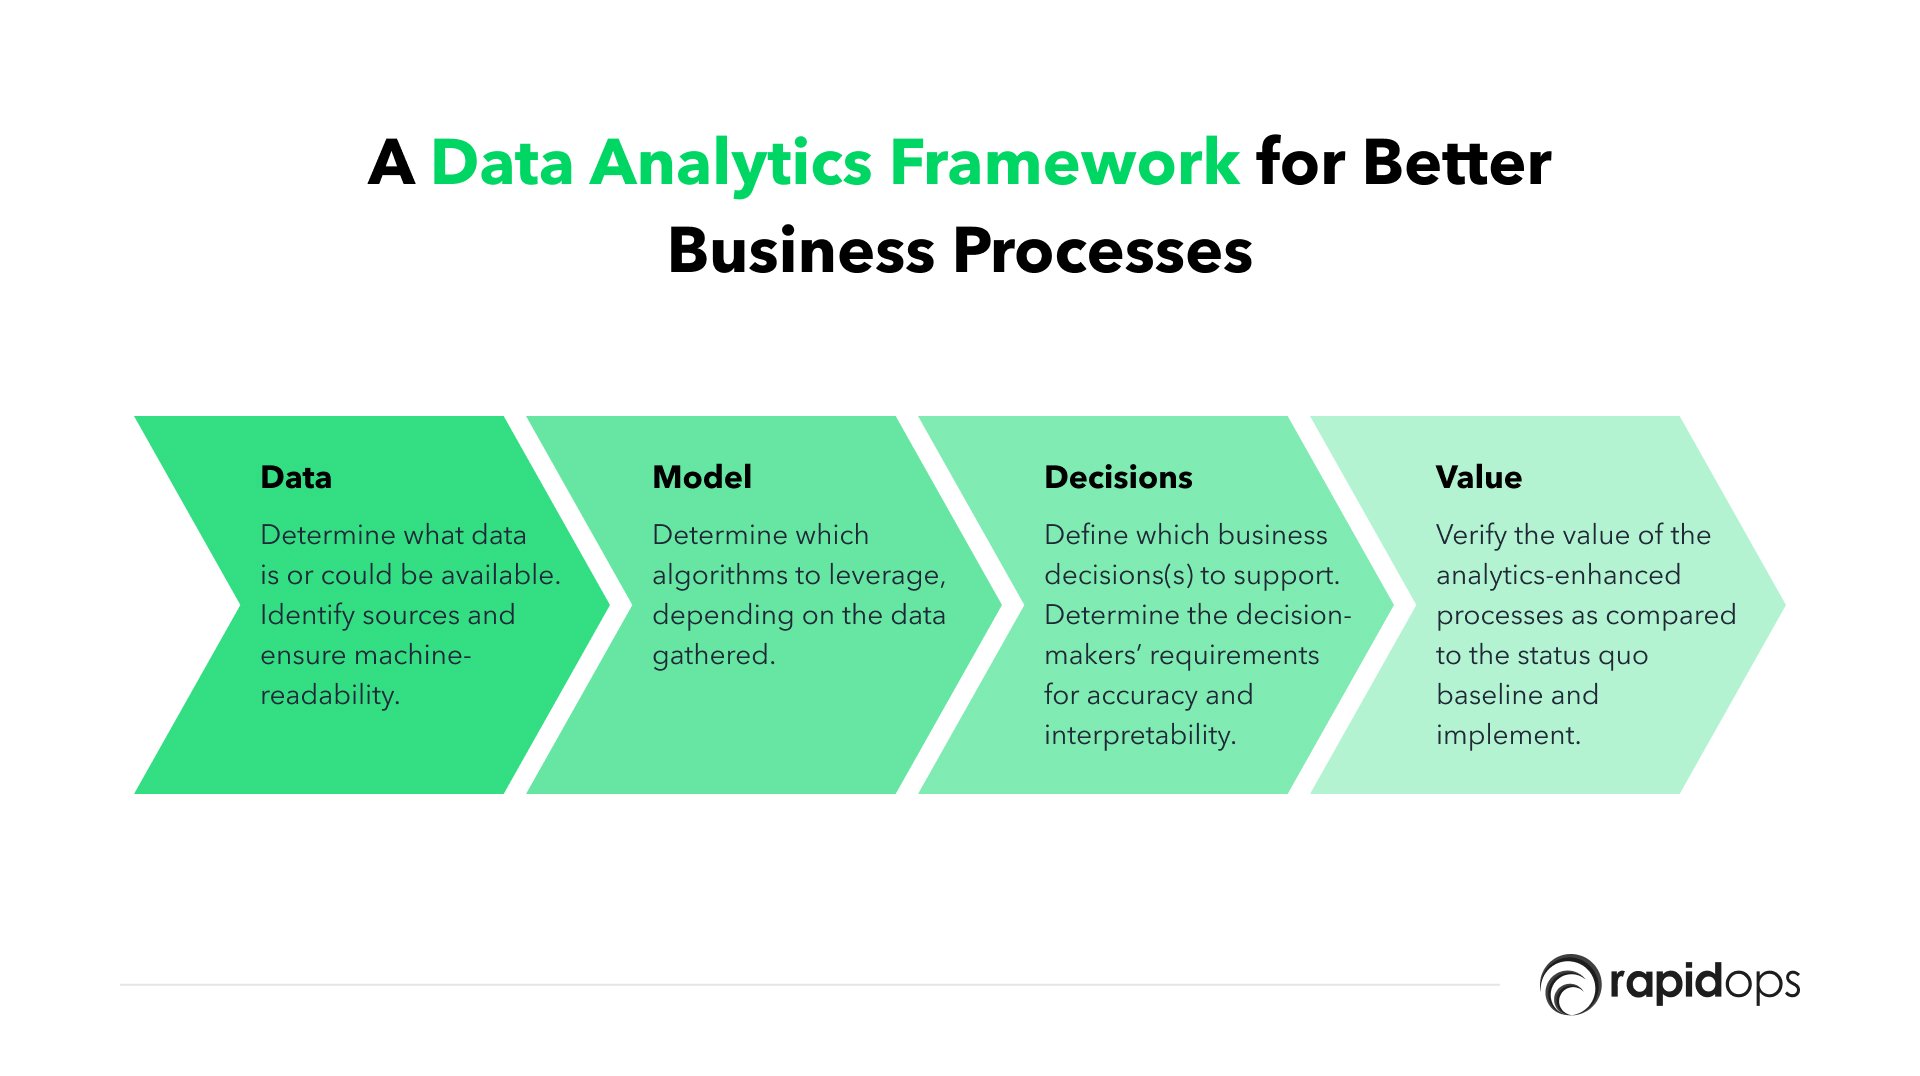 Data analytics framework for better business processes